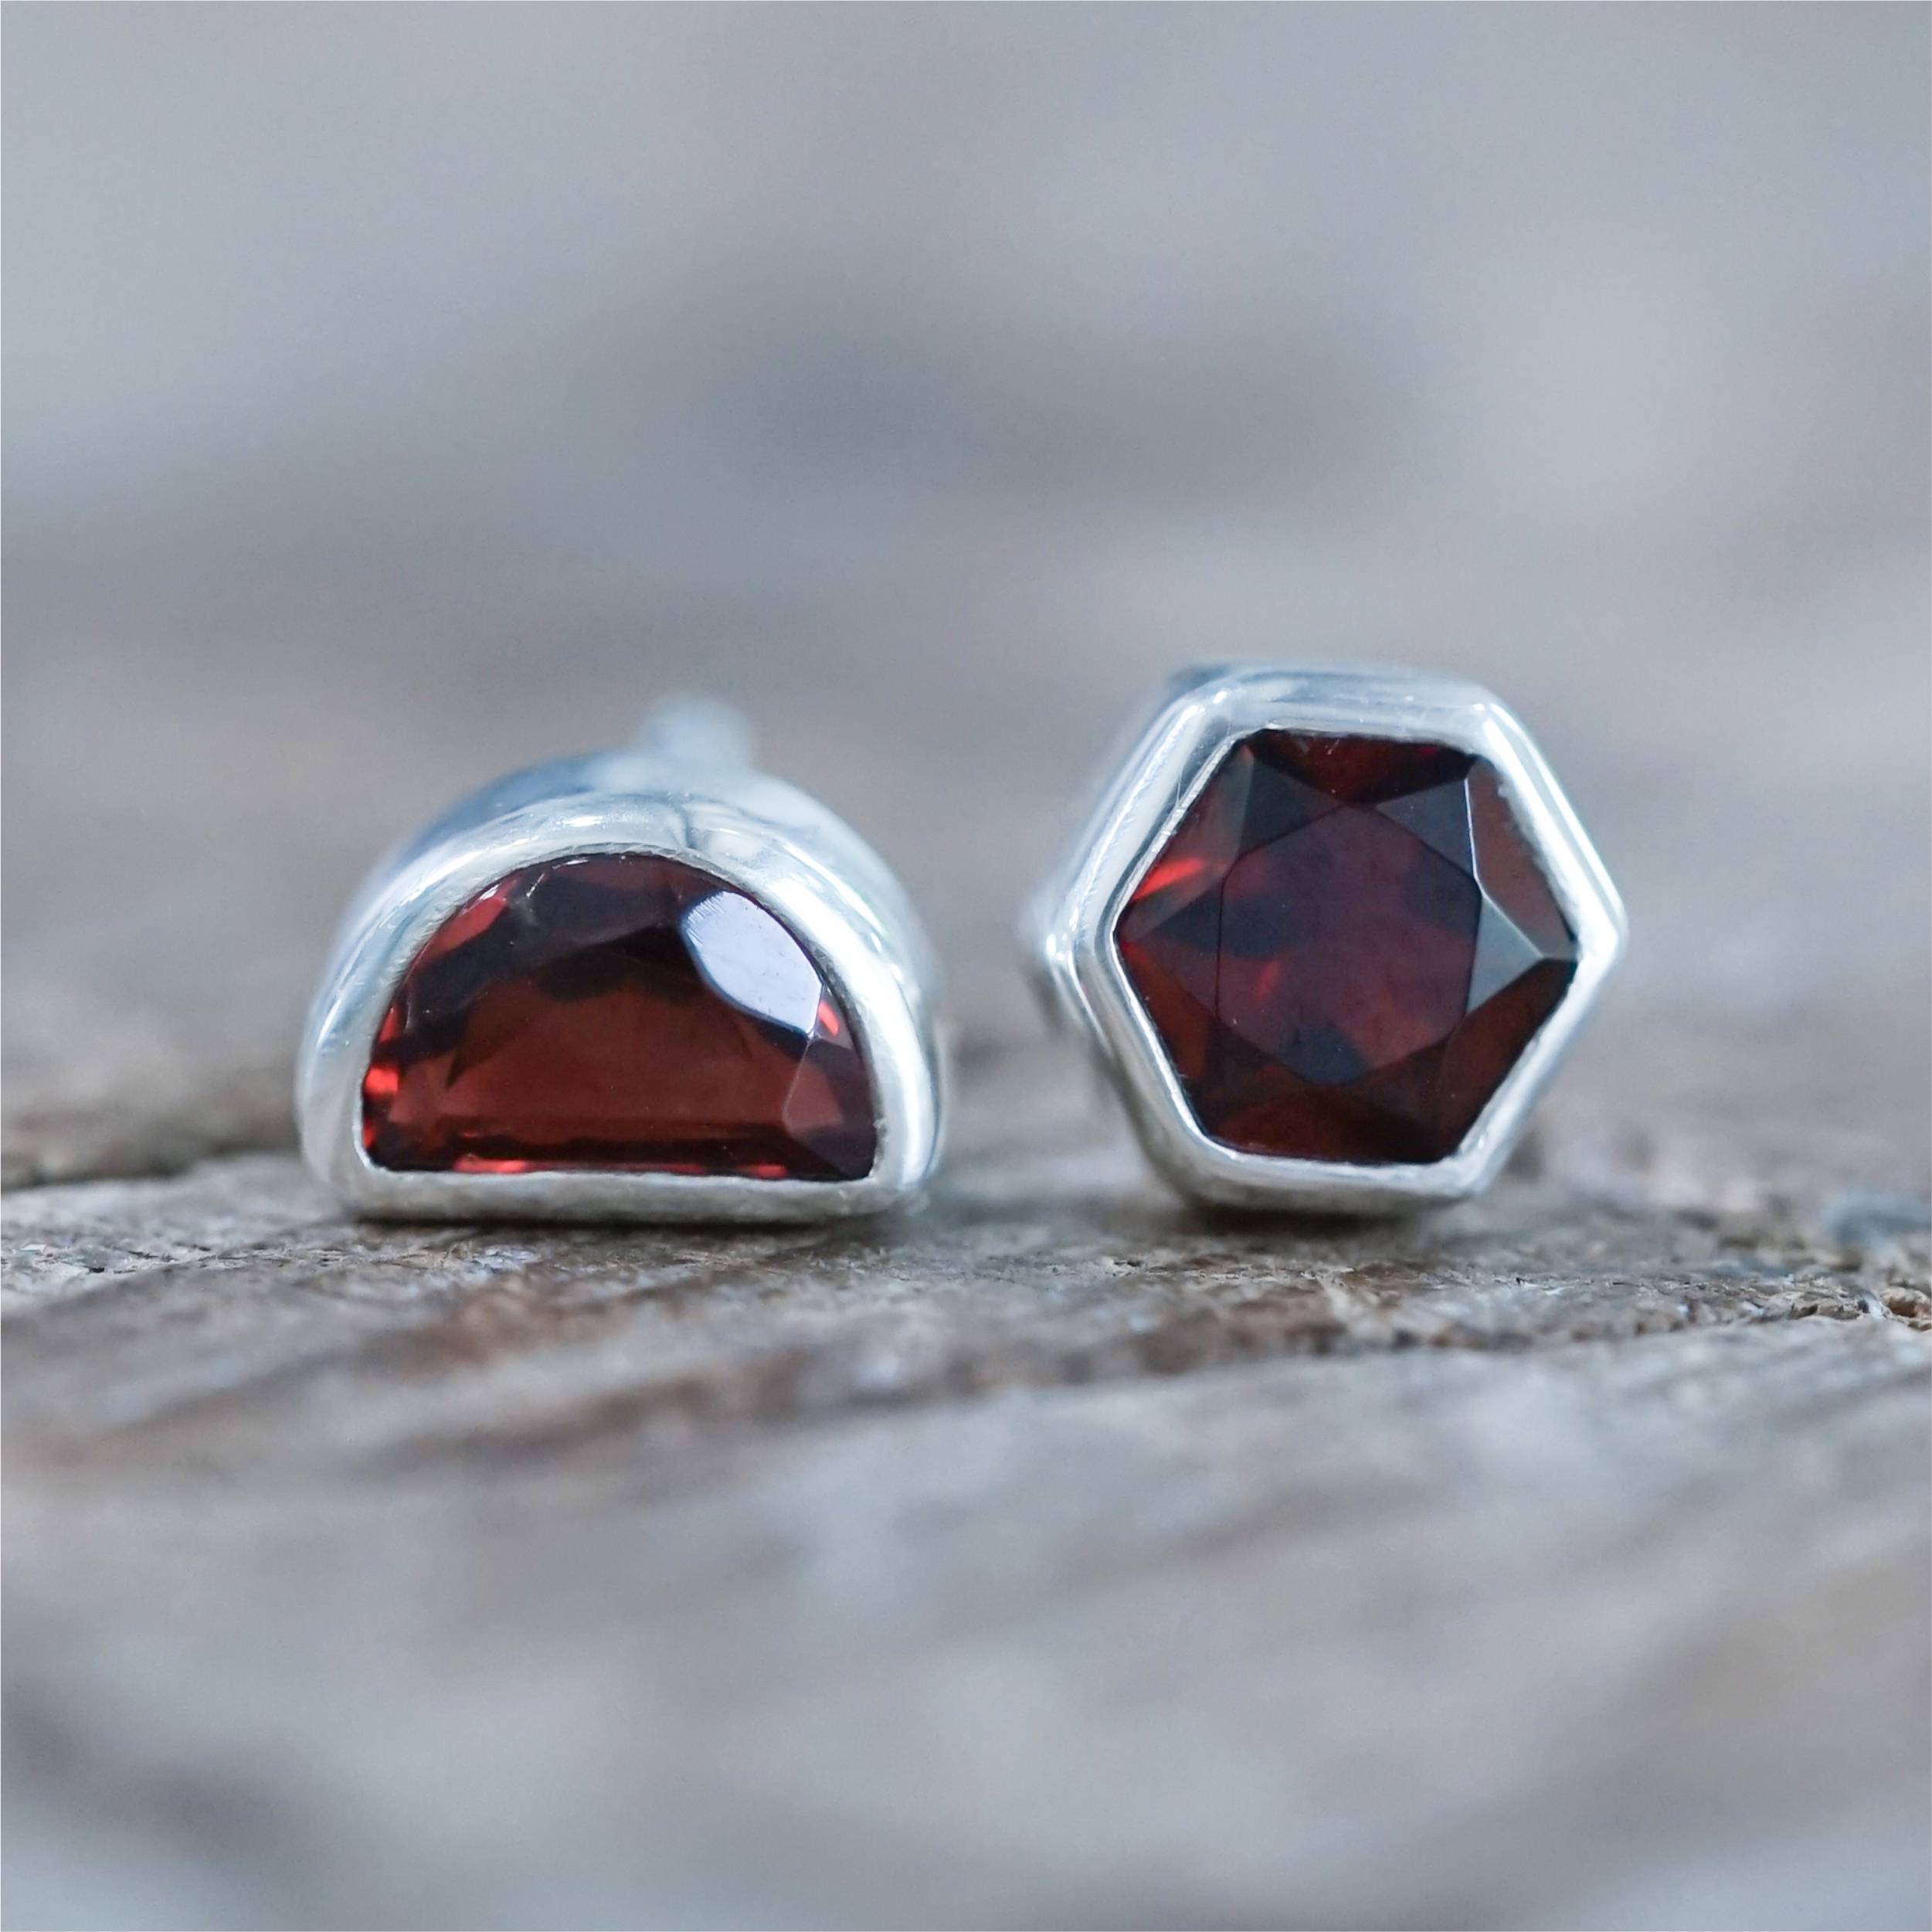 Garnet earrings